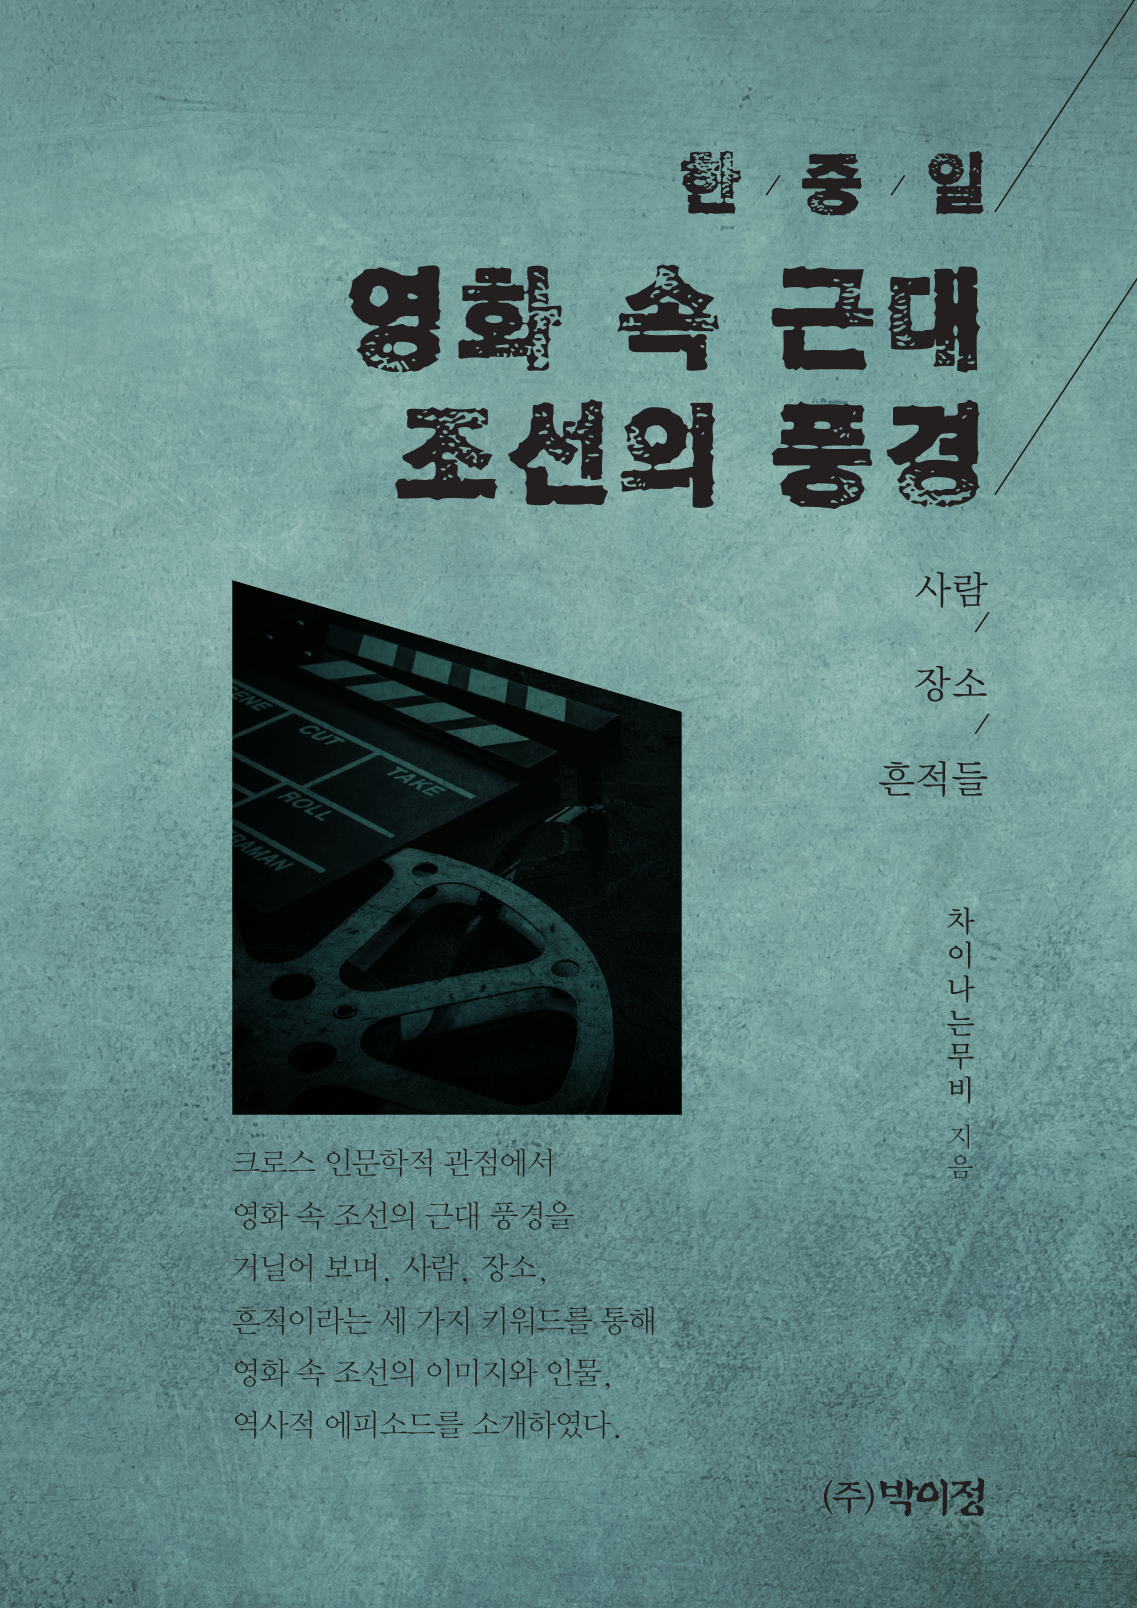 한중일 영화 속 근대 조선의 풍경 (사람 / 장소 / 흔적들)